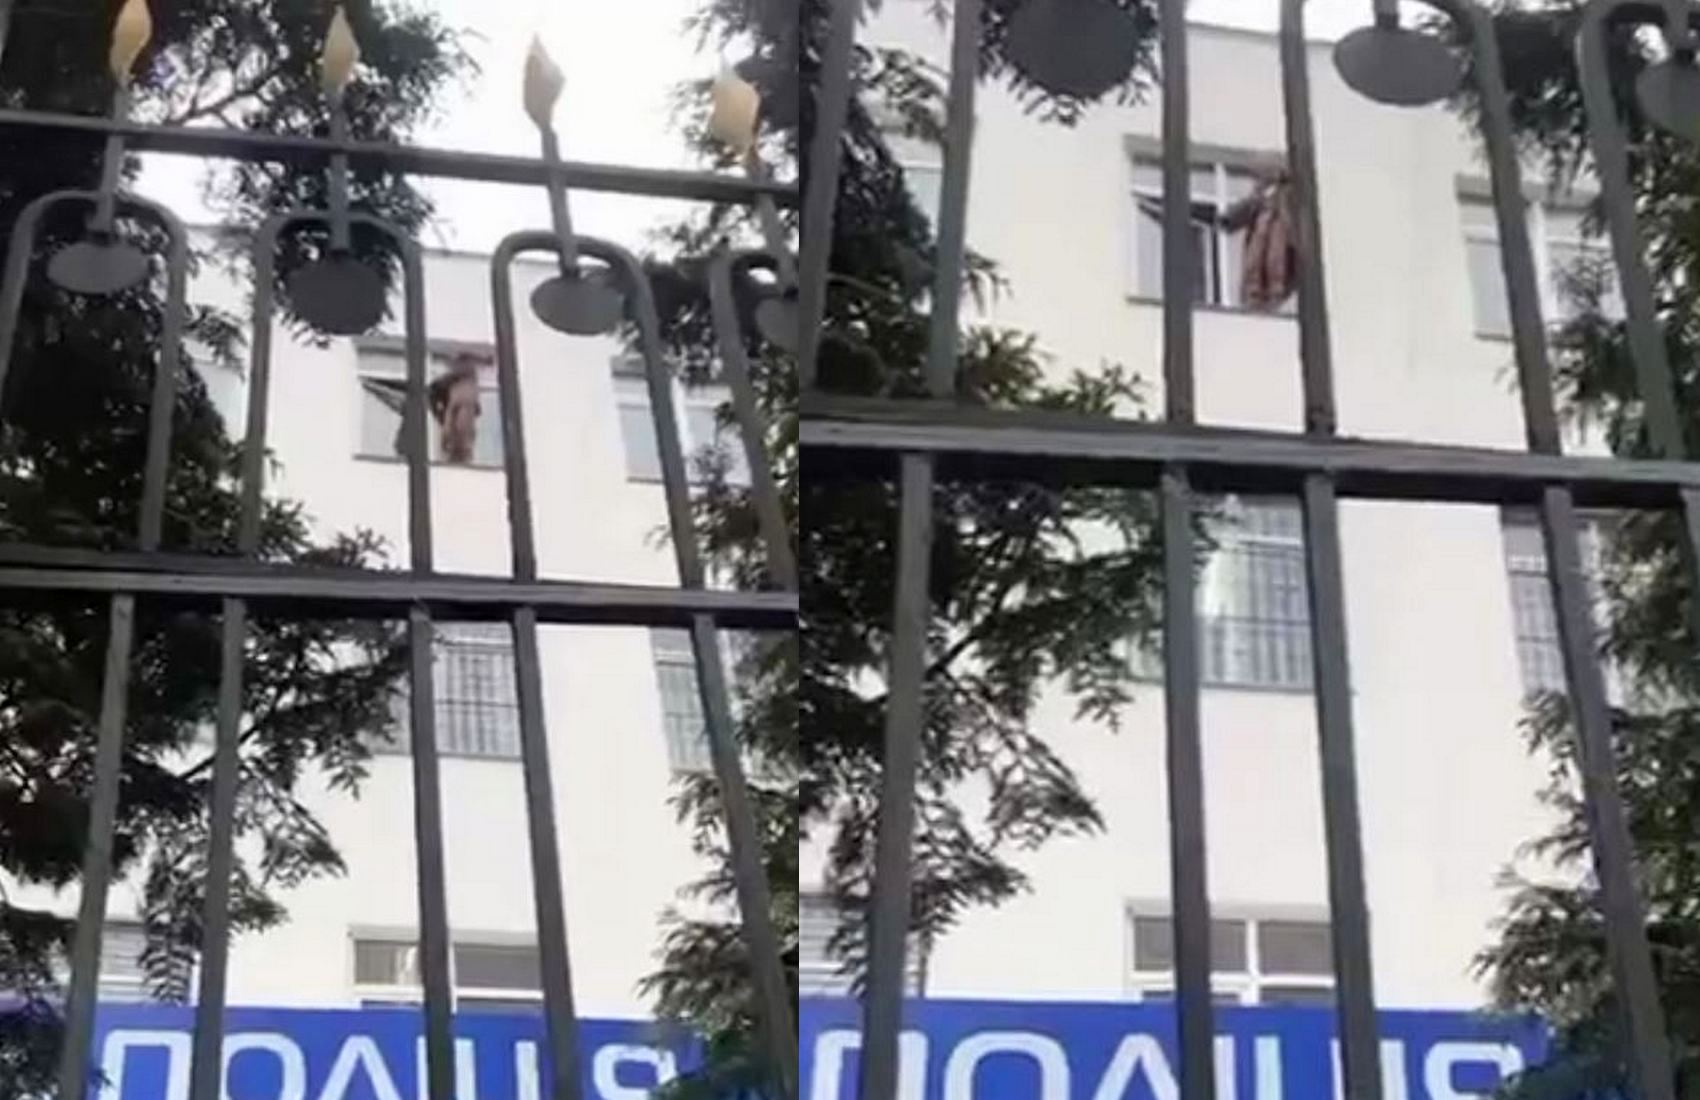 Задержанный ветеран грозится выпрыгнуть из окна здания полиции, если не закроют НАШ (видео)